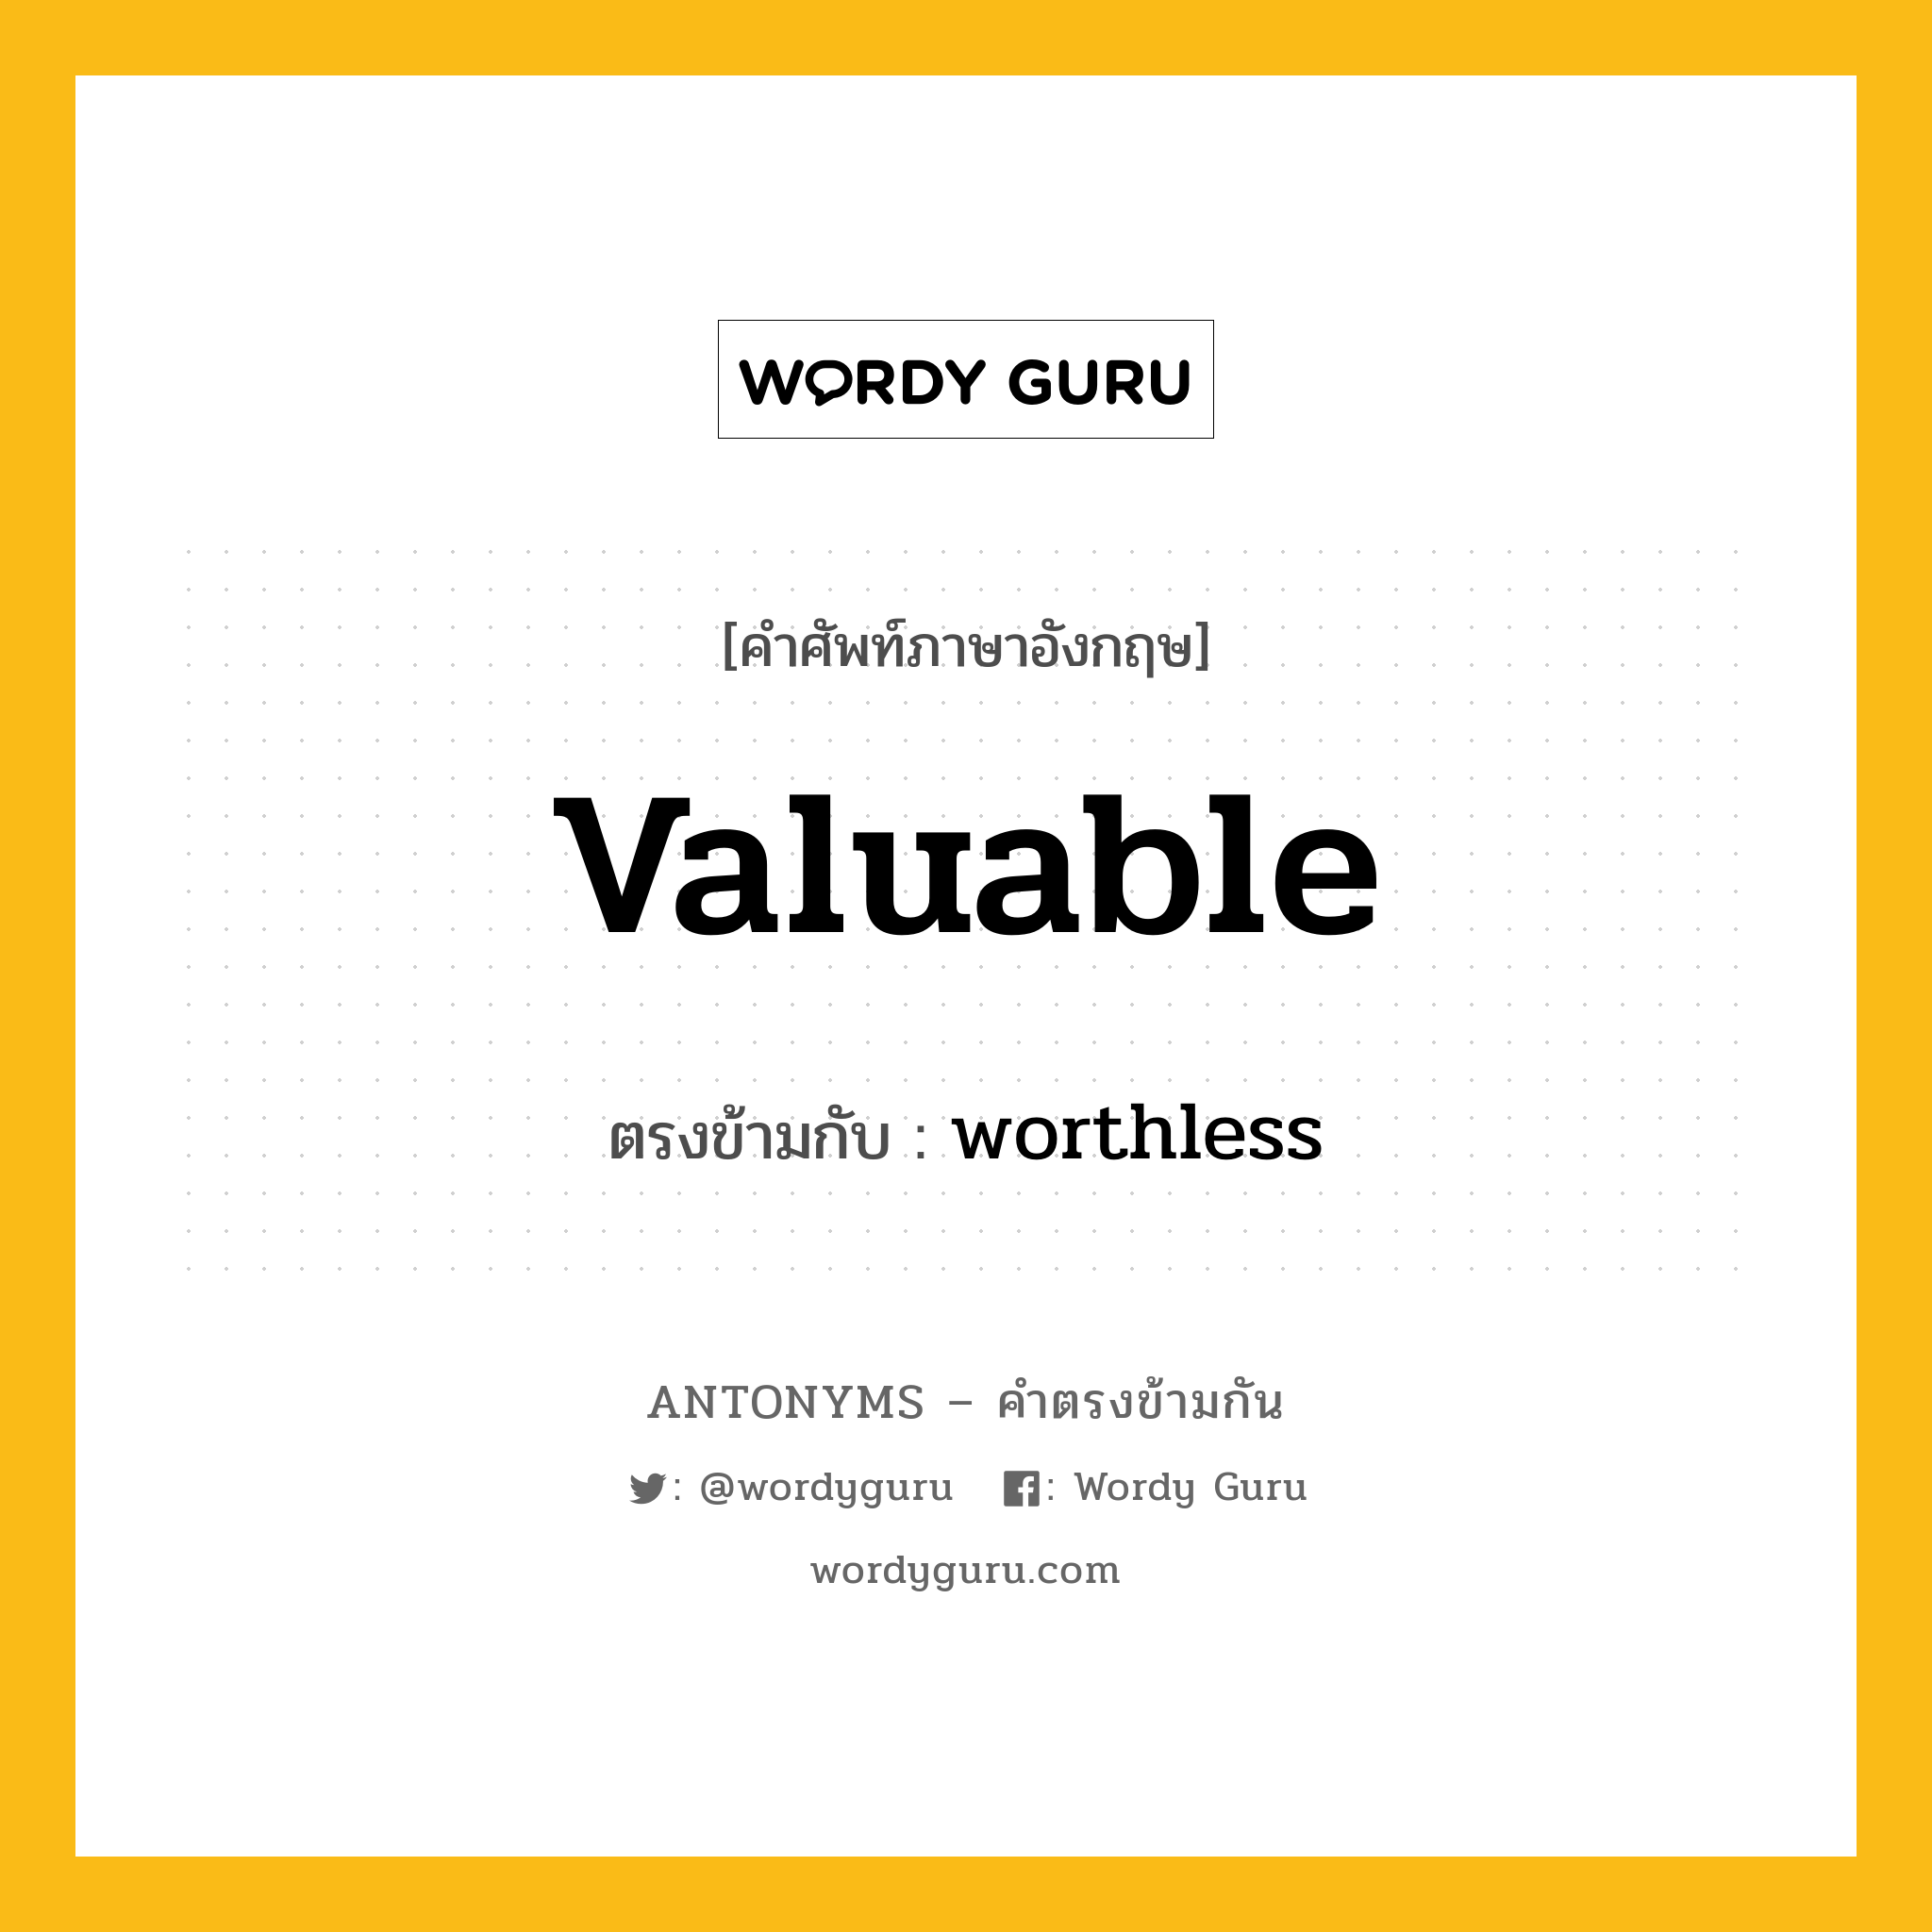 valuable เป็นคำตรงข้ามกับคำไหนบ้าง?, คำศัพท์ภาษาอังกฤษ valuable ตรงข้ามกับ worthless หมวด worthless